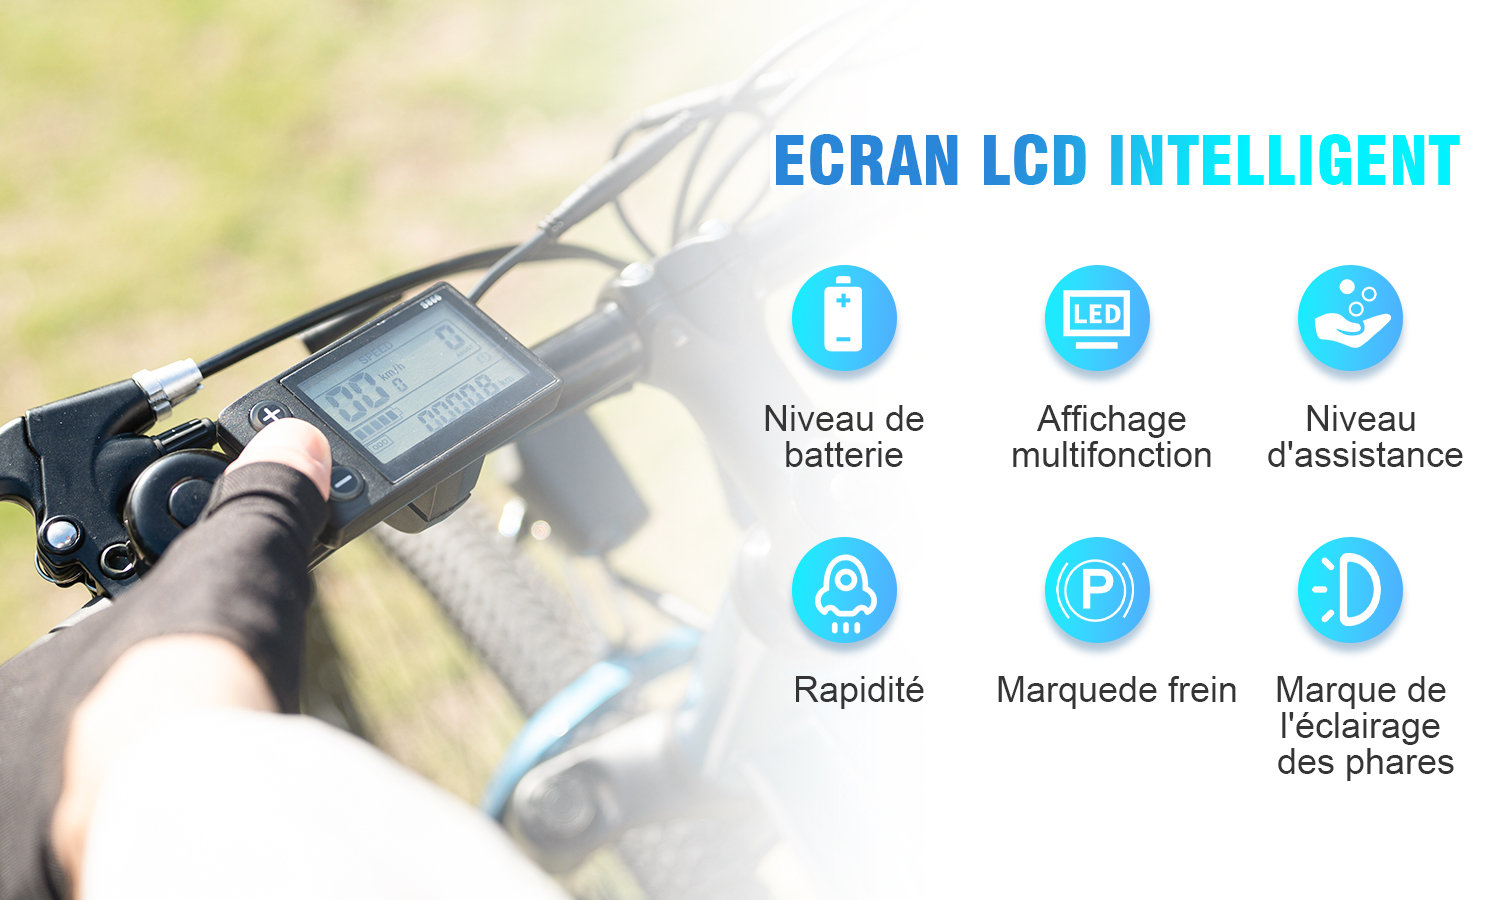 Rcb vélo électrique e-bike 26 - 7 vitesses max 25km/h - batterie